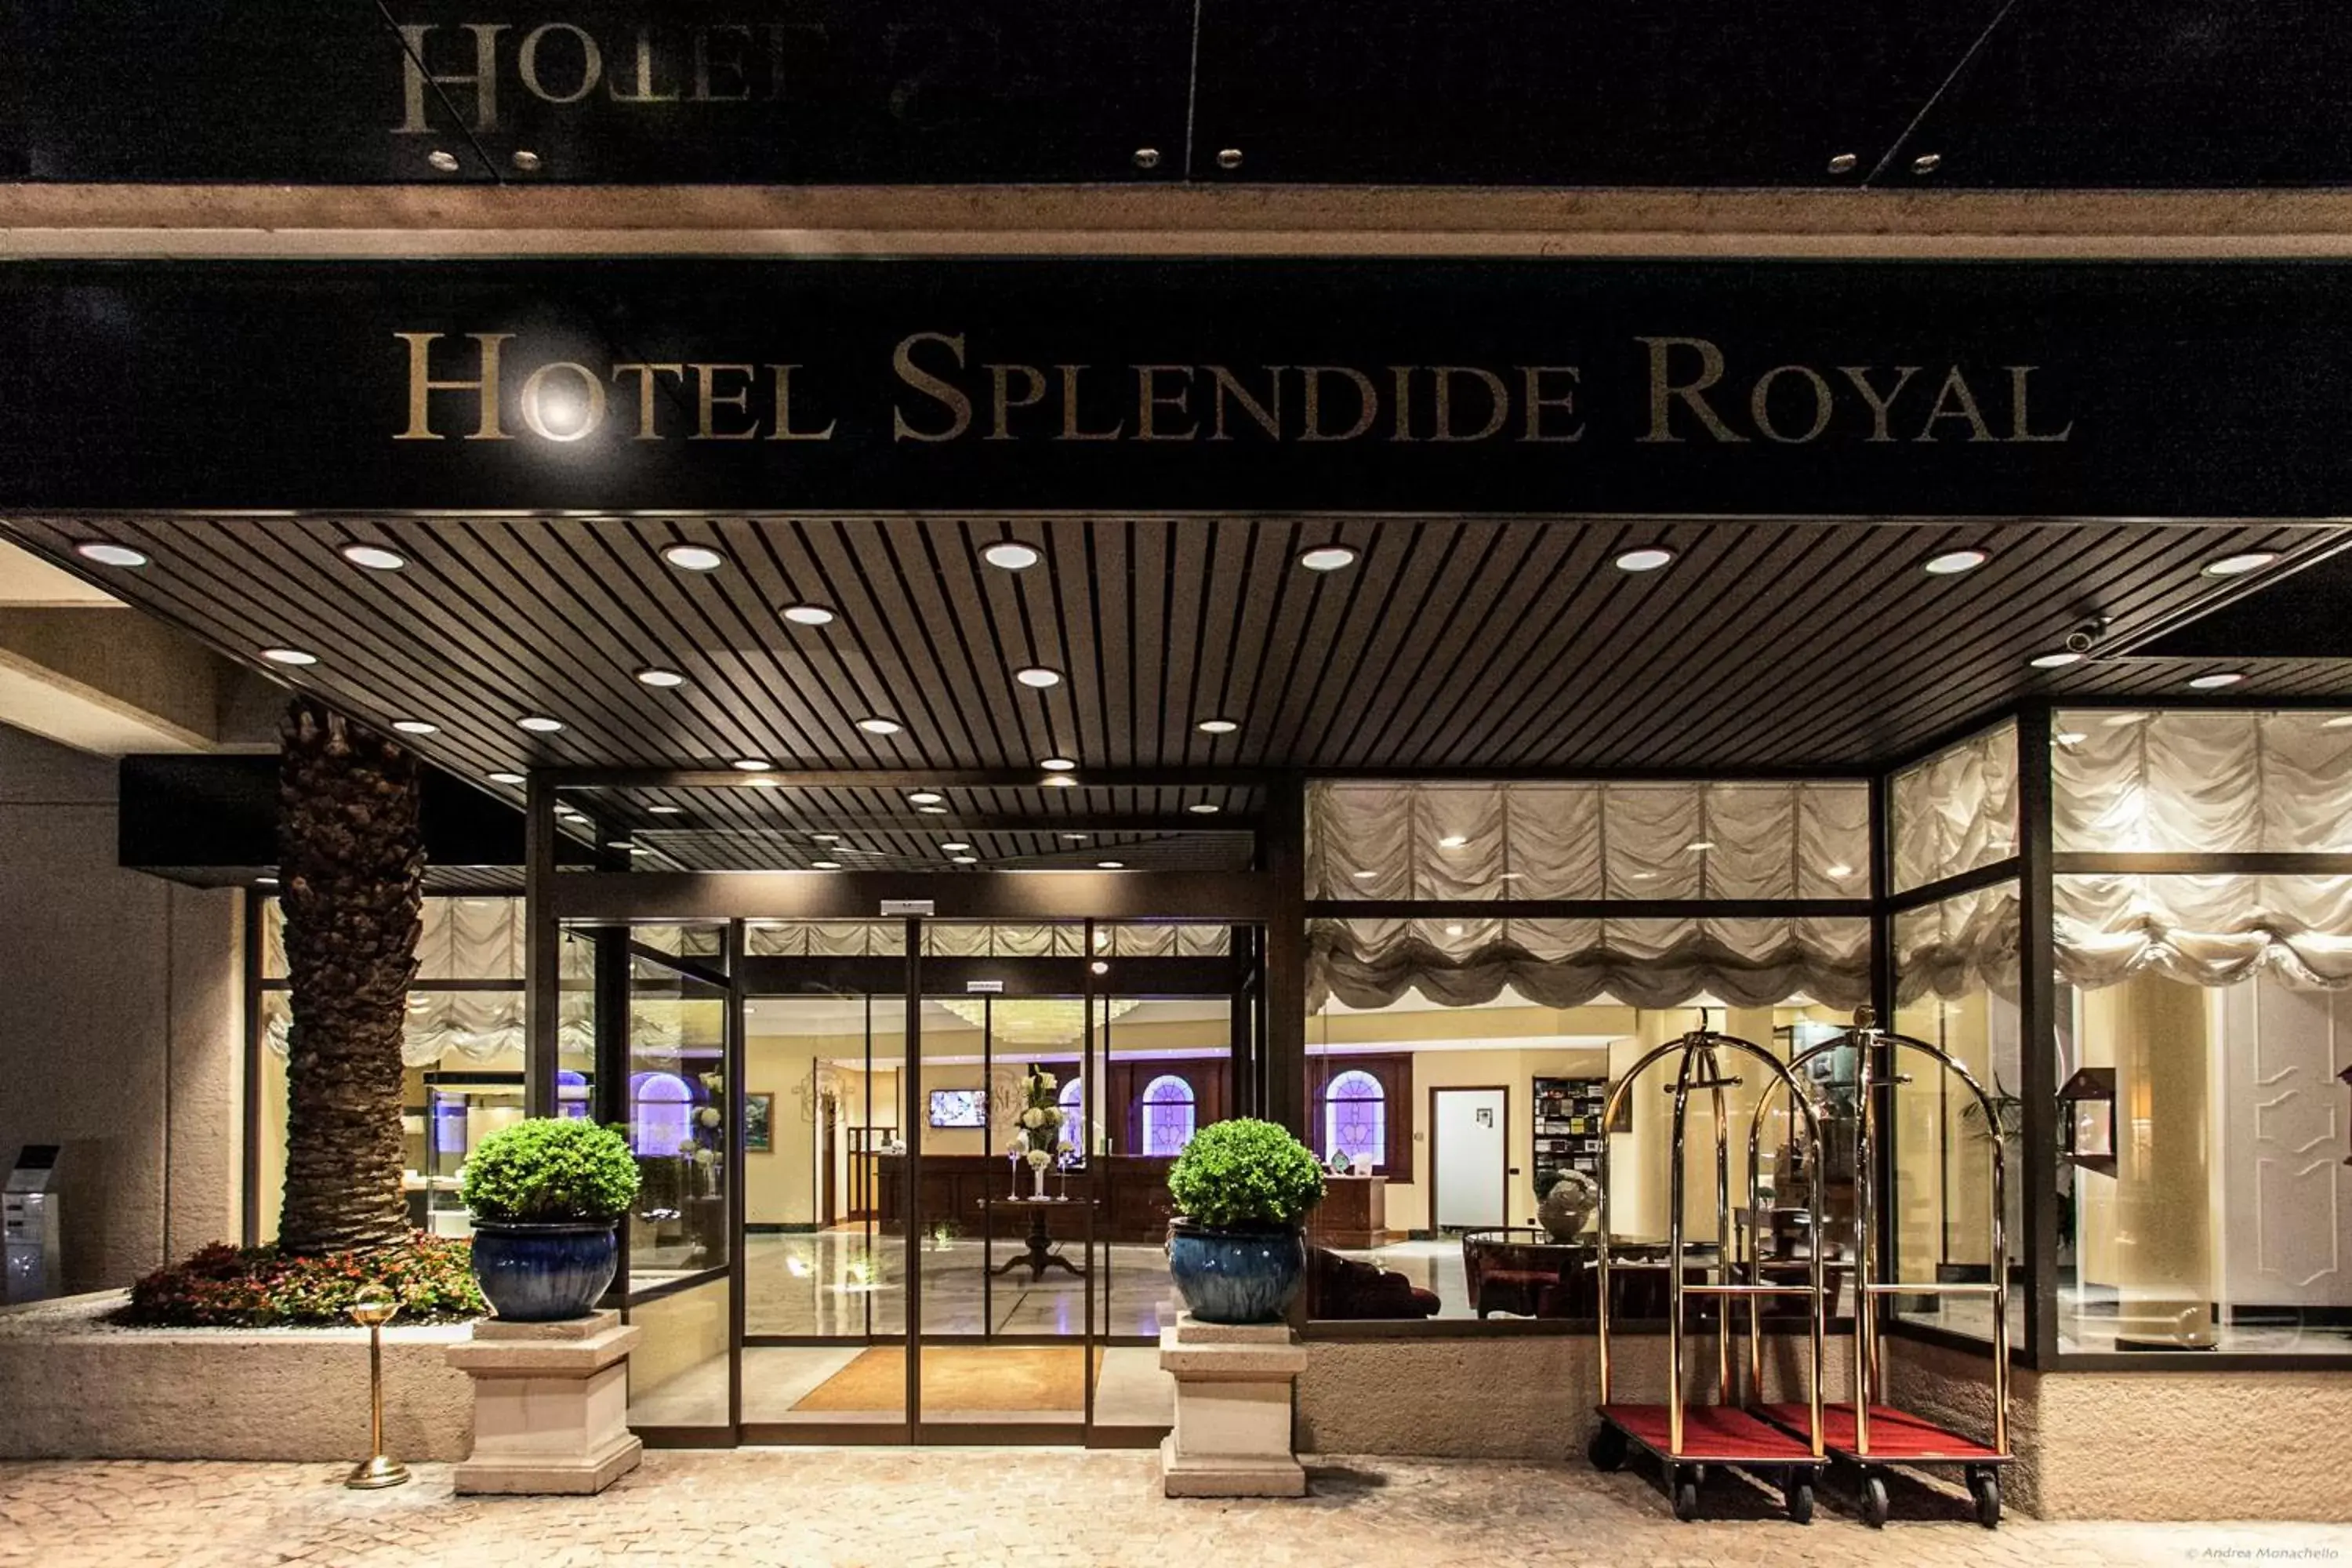 Facade/Entrance in Hotel Splendide Royal